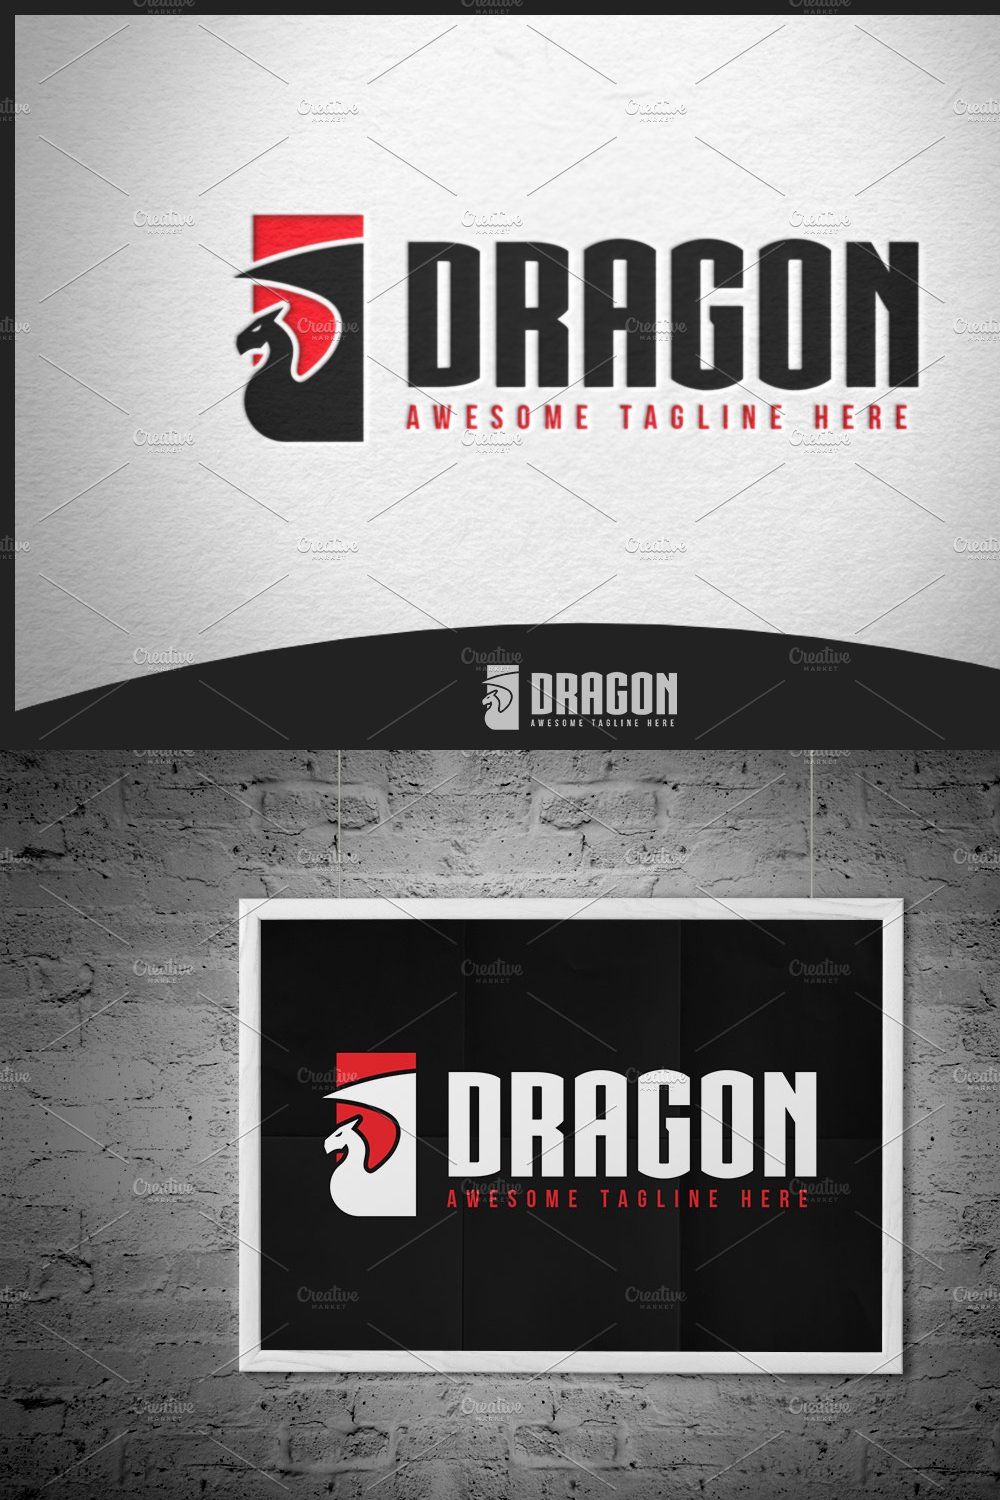 Dragon Logo 3 pinterest preview image.